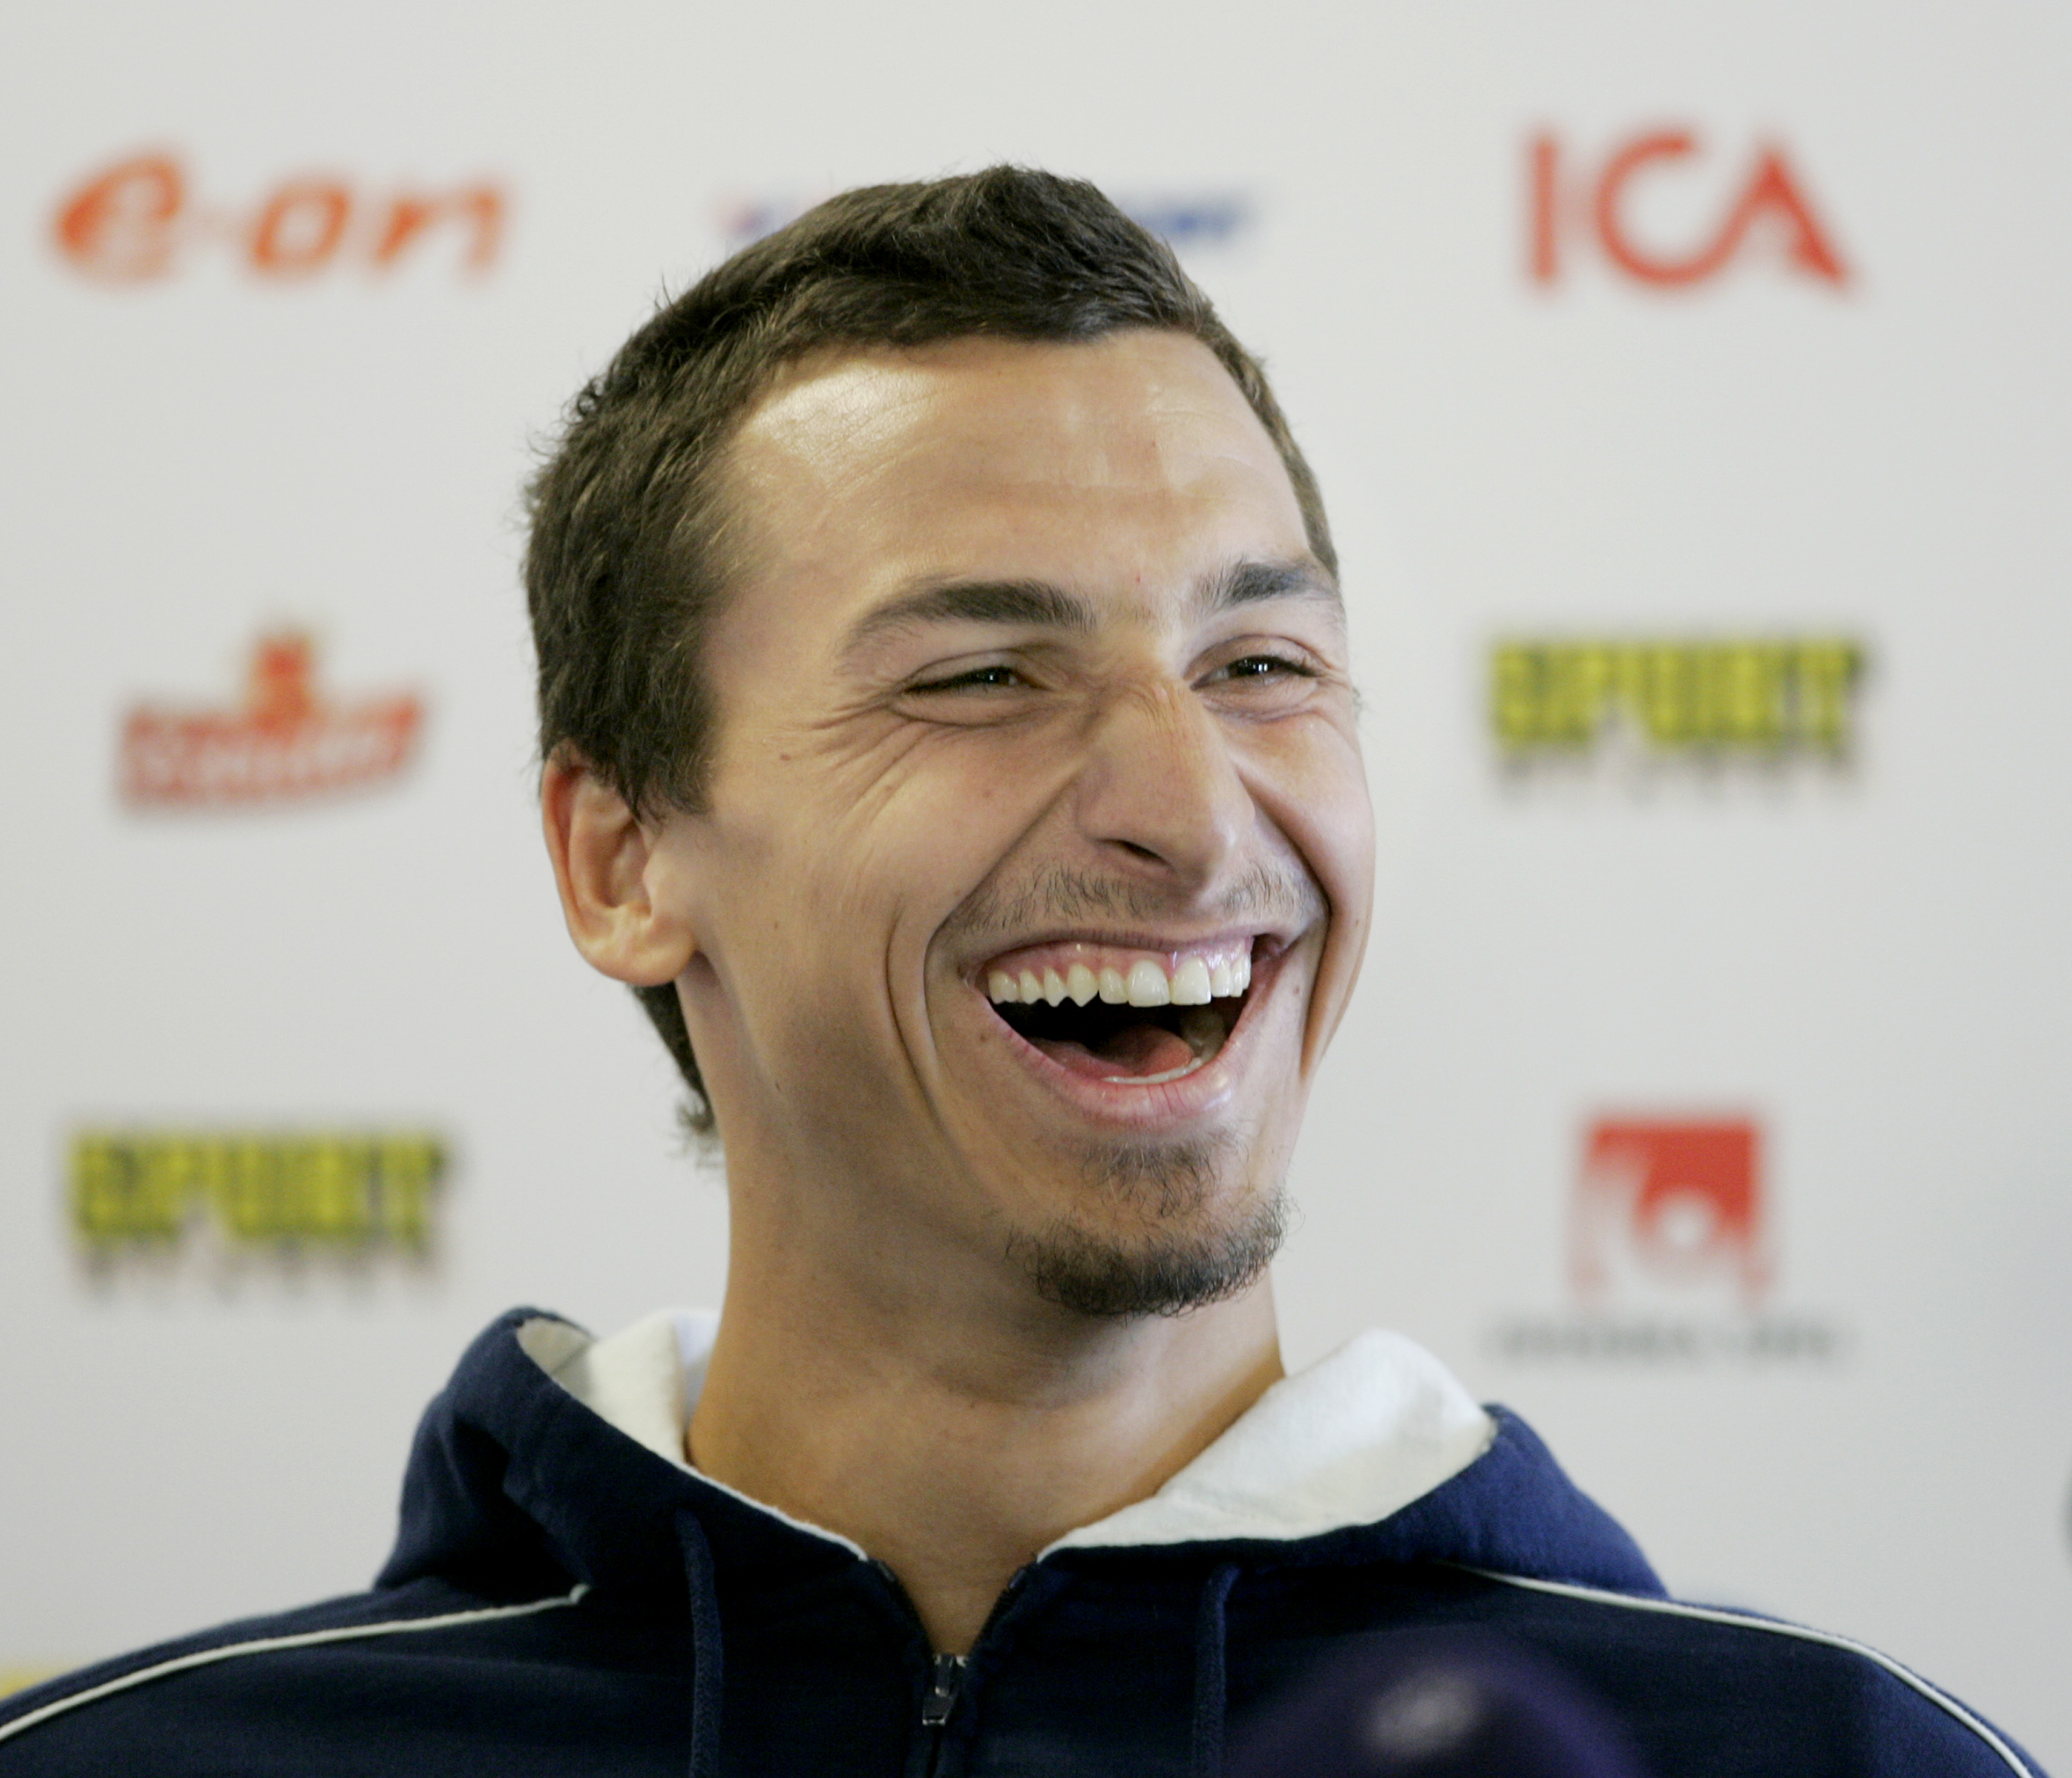 Det är det här leendet som fått svenska folksjälen att smälta. Grattis Zlatan på din 30-års dag.